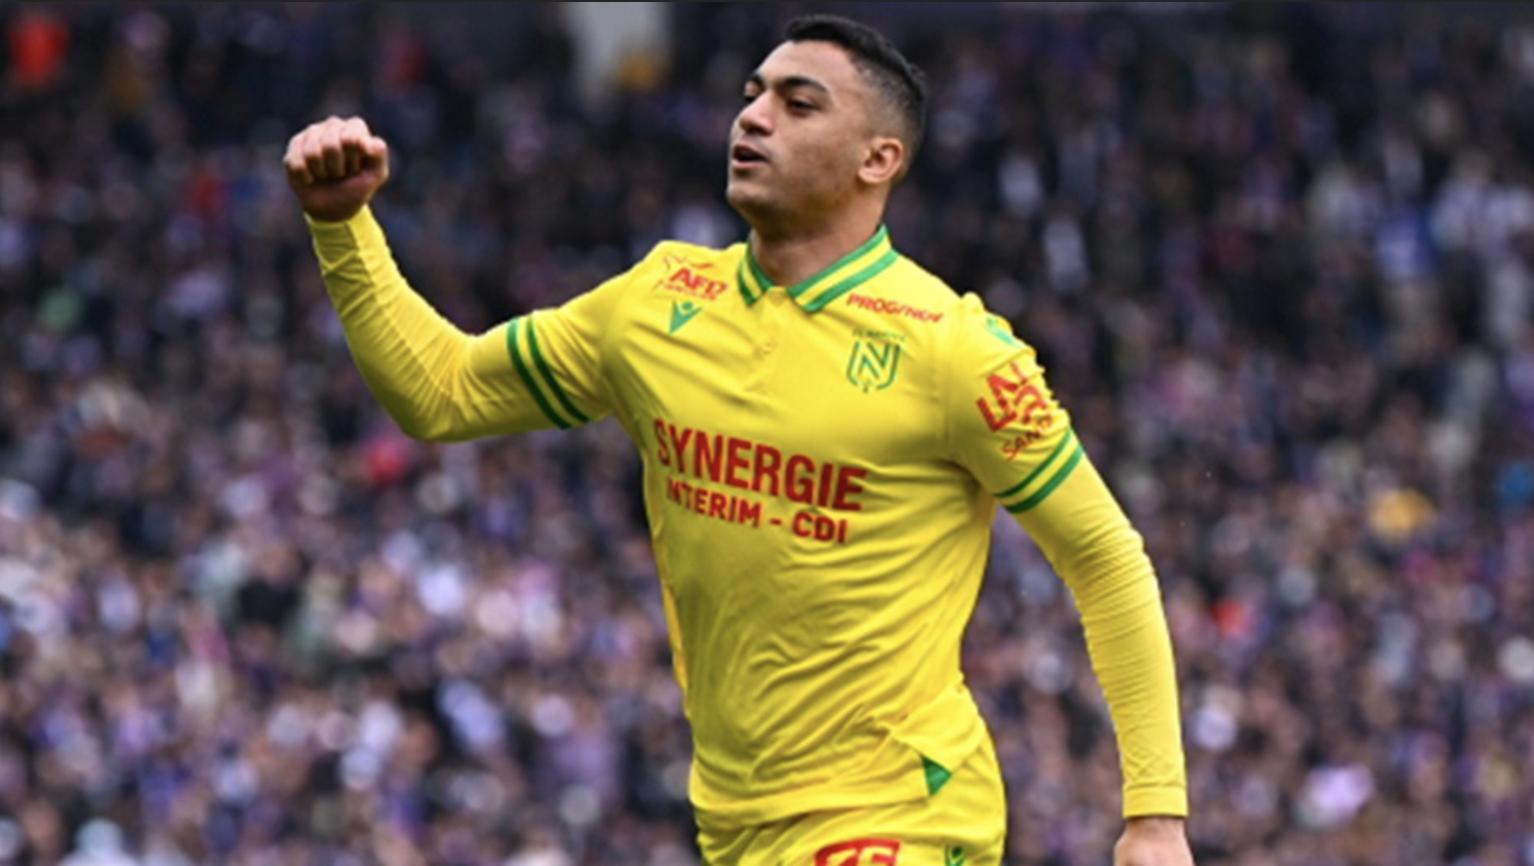 VIDEO | Ligue 1 Highlights: Tolouse vs Nantes